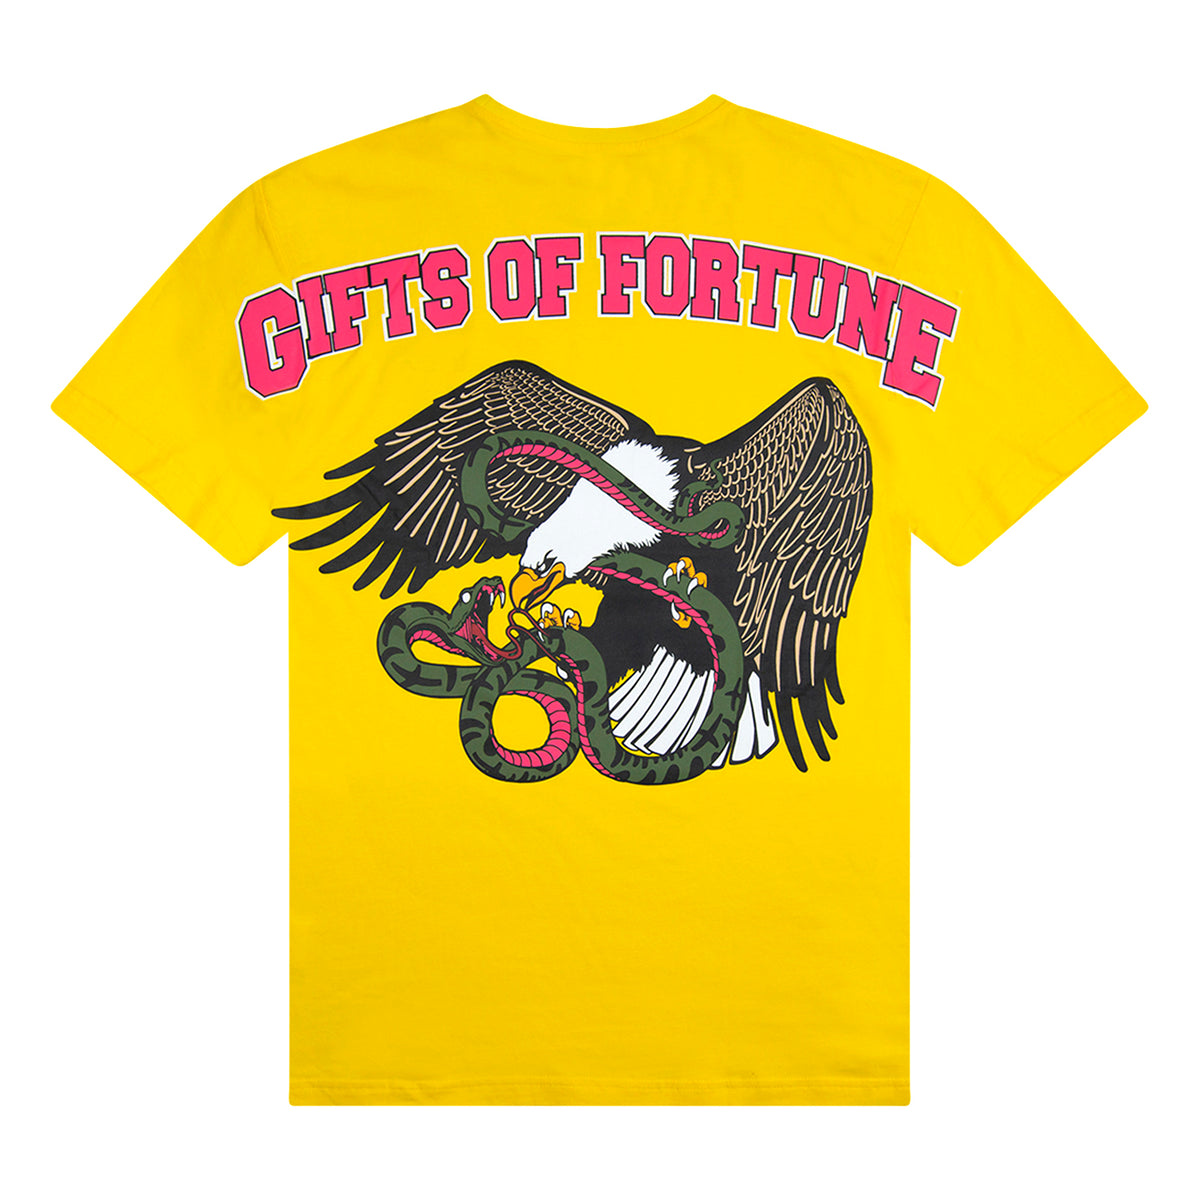 Iron Bird T-shirt | Yellow